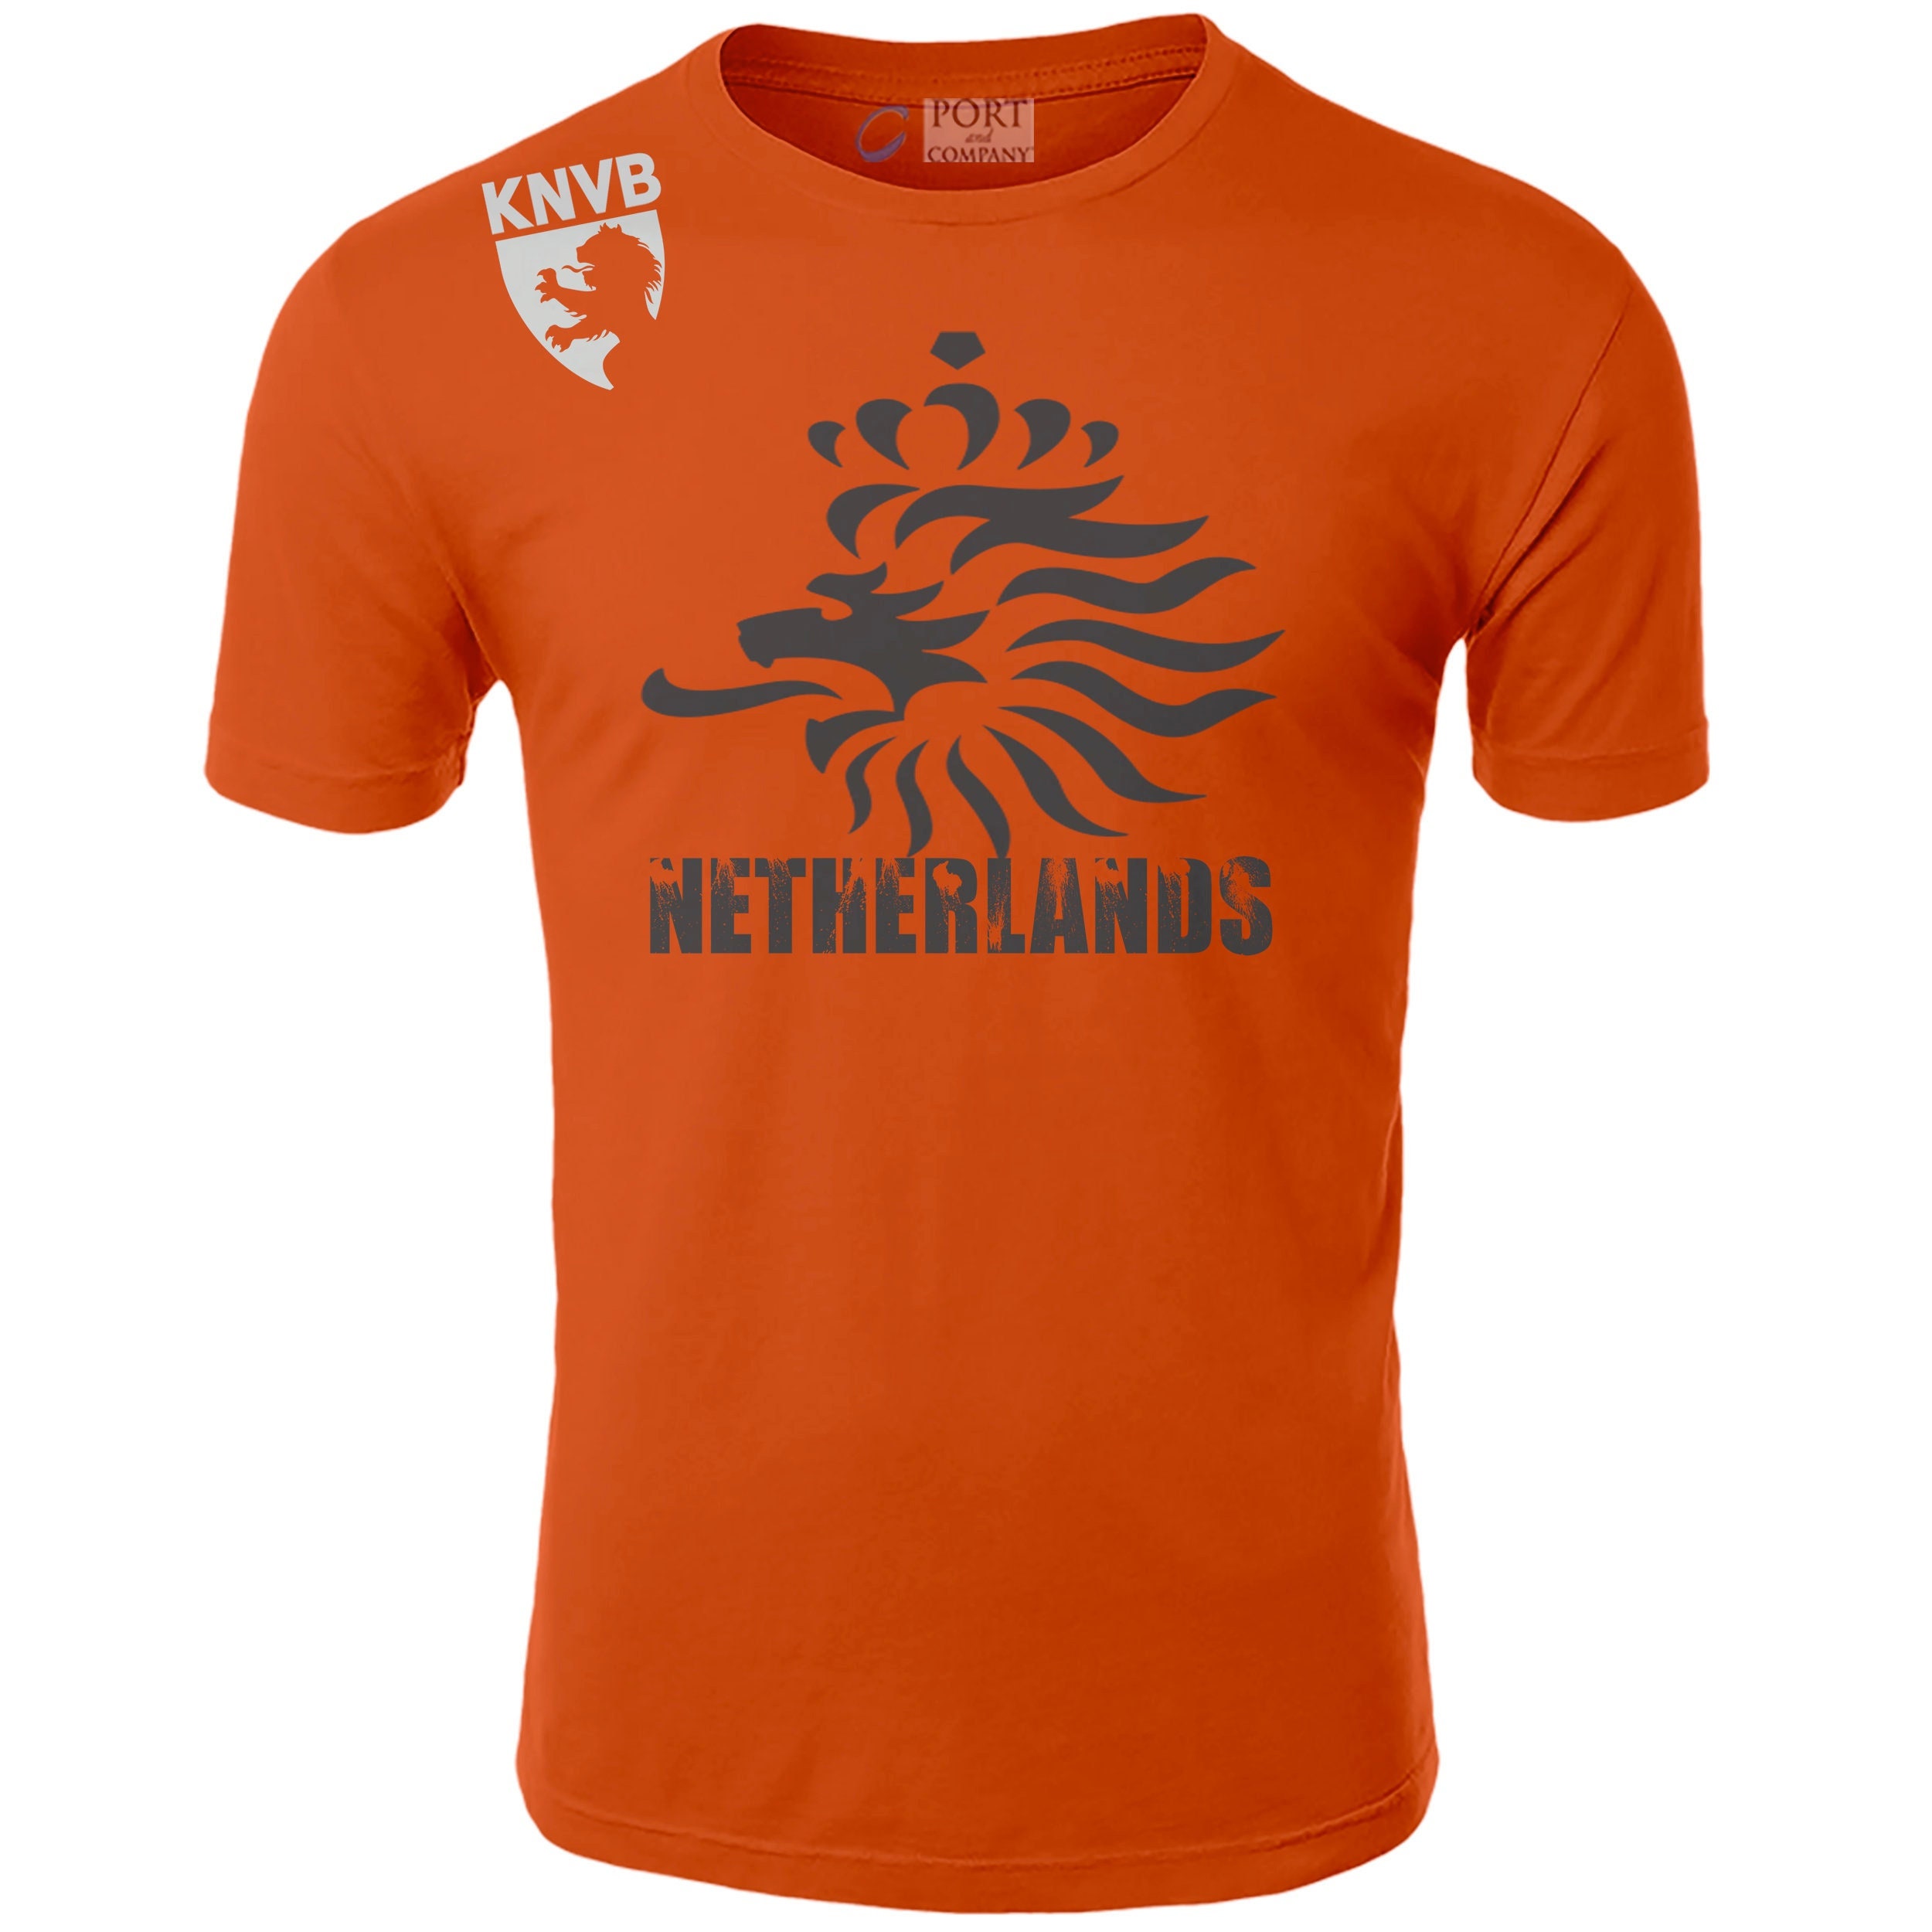 Netherlands Jersey Vintage 90s Netherlands KNVB by Lotto Made 